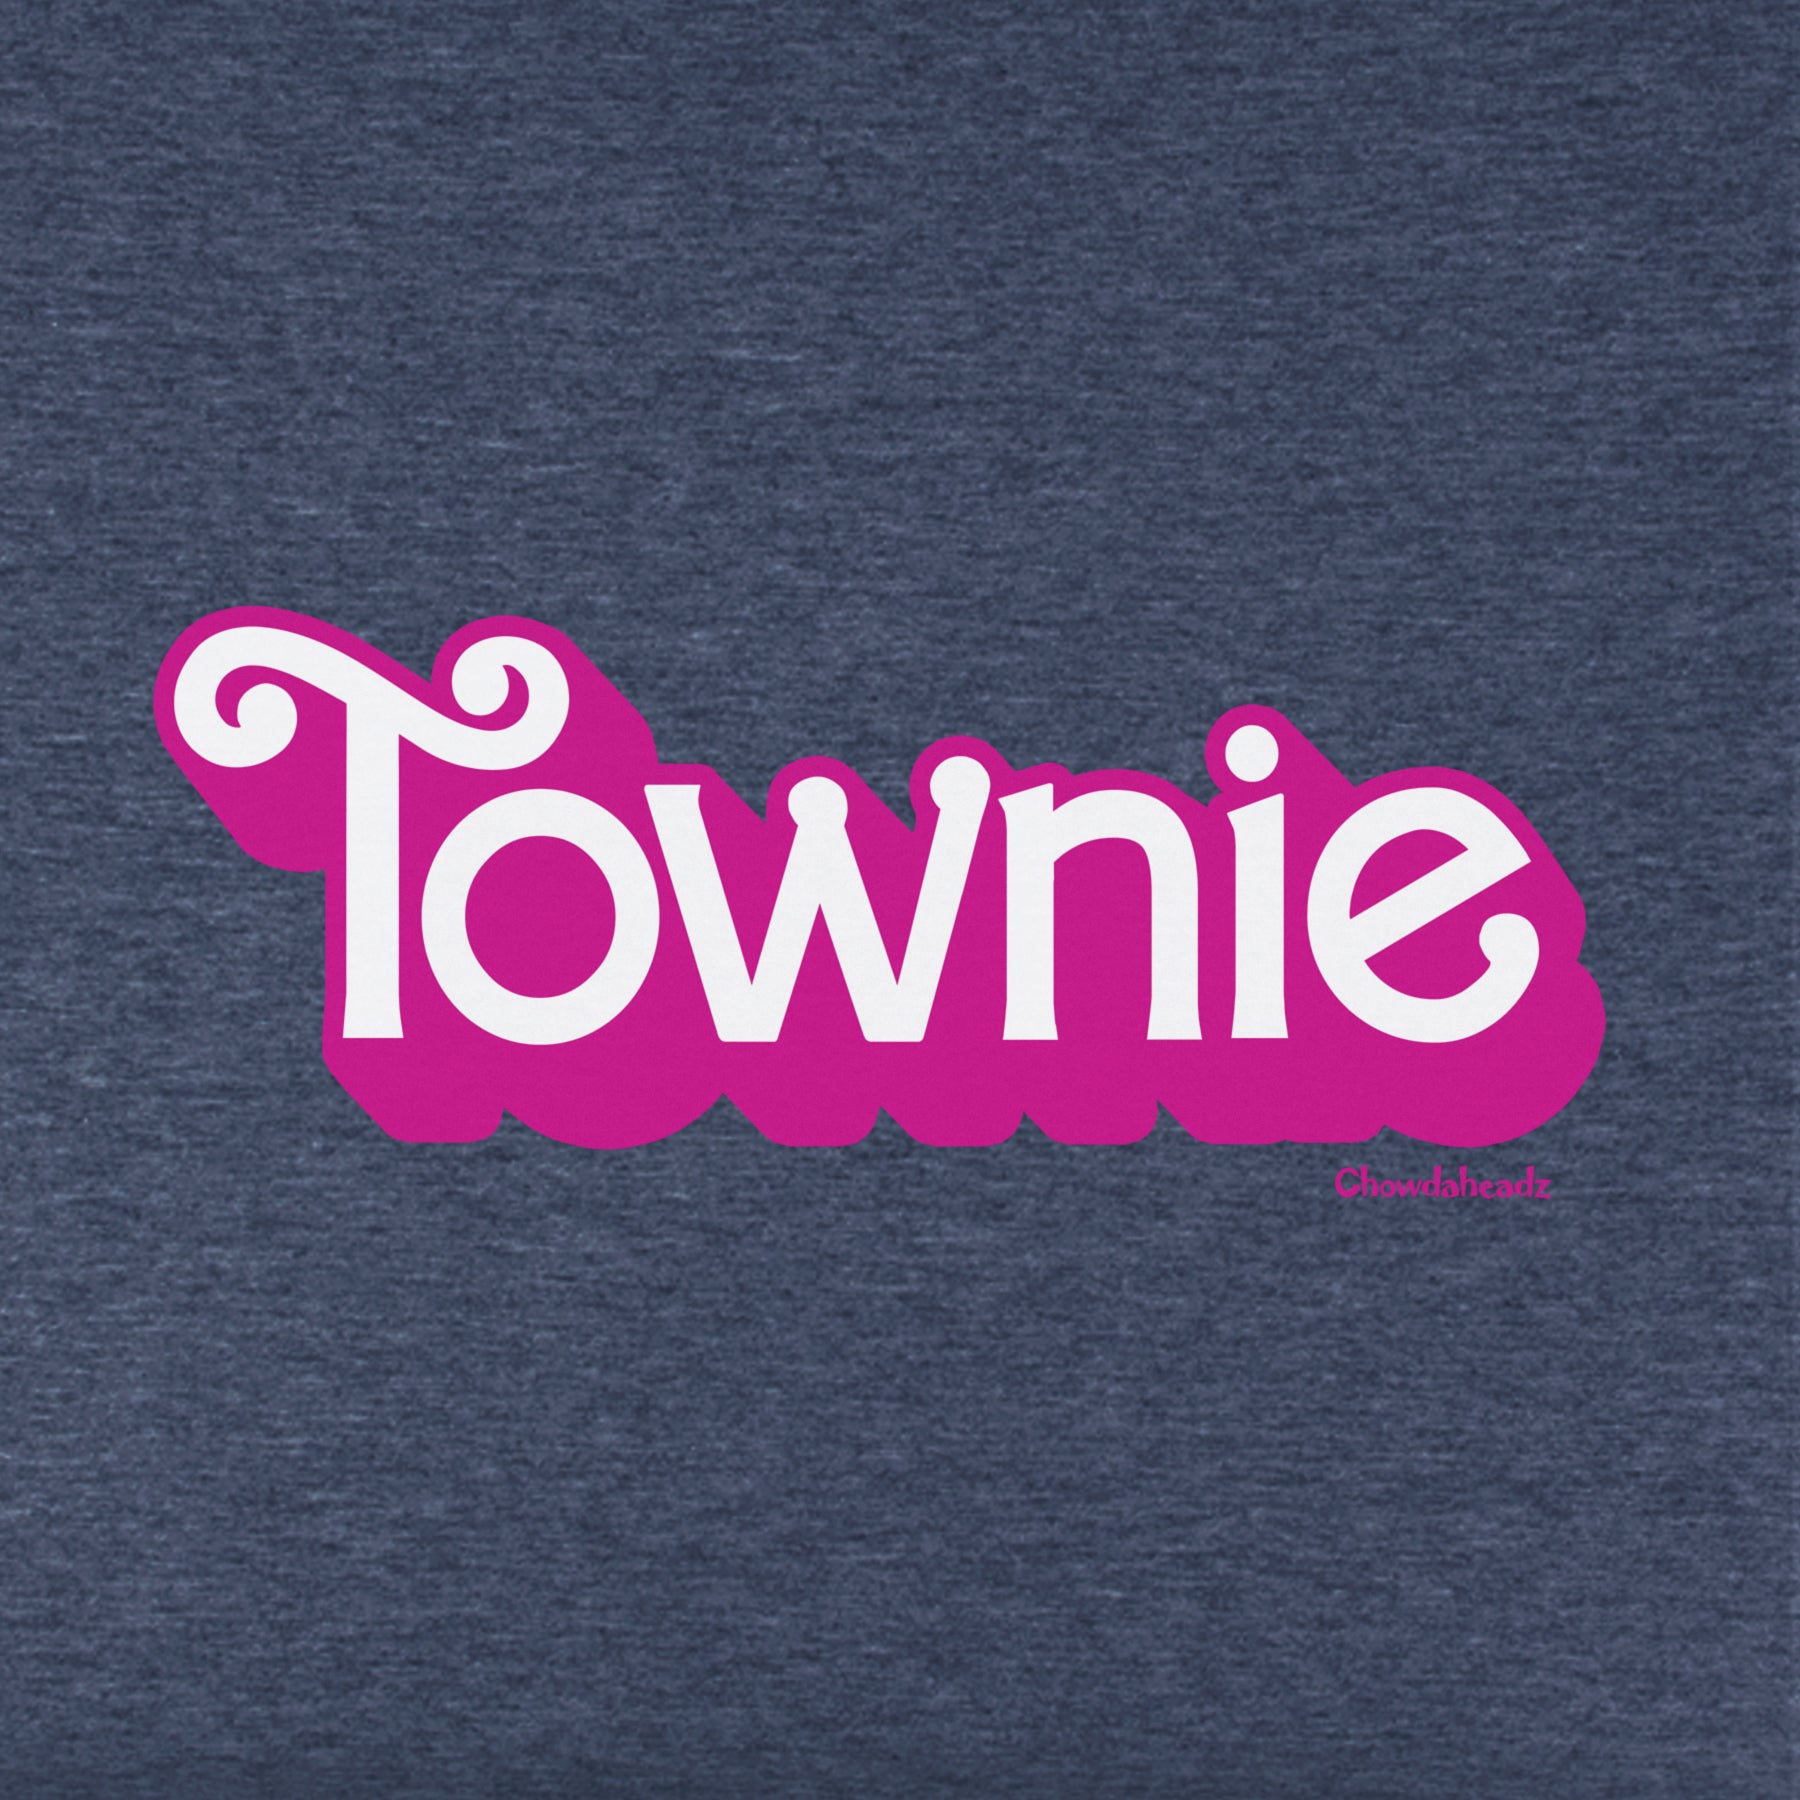 Townie Pink Logo Youth Hoodie - Chowdaheadz